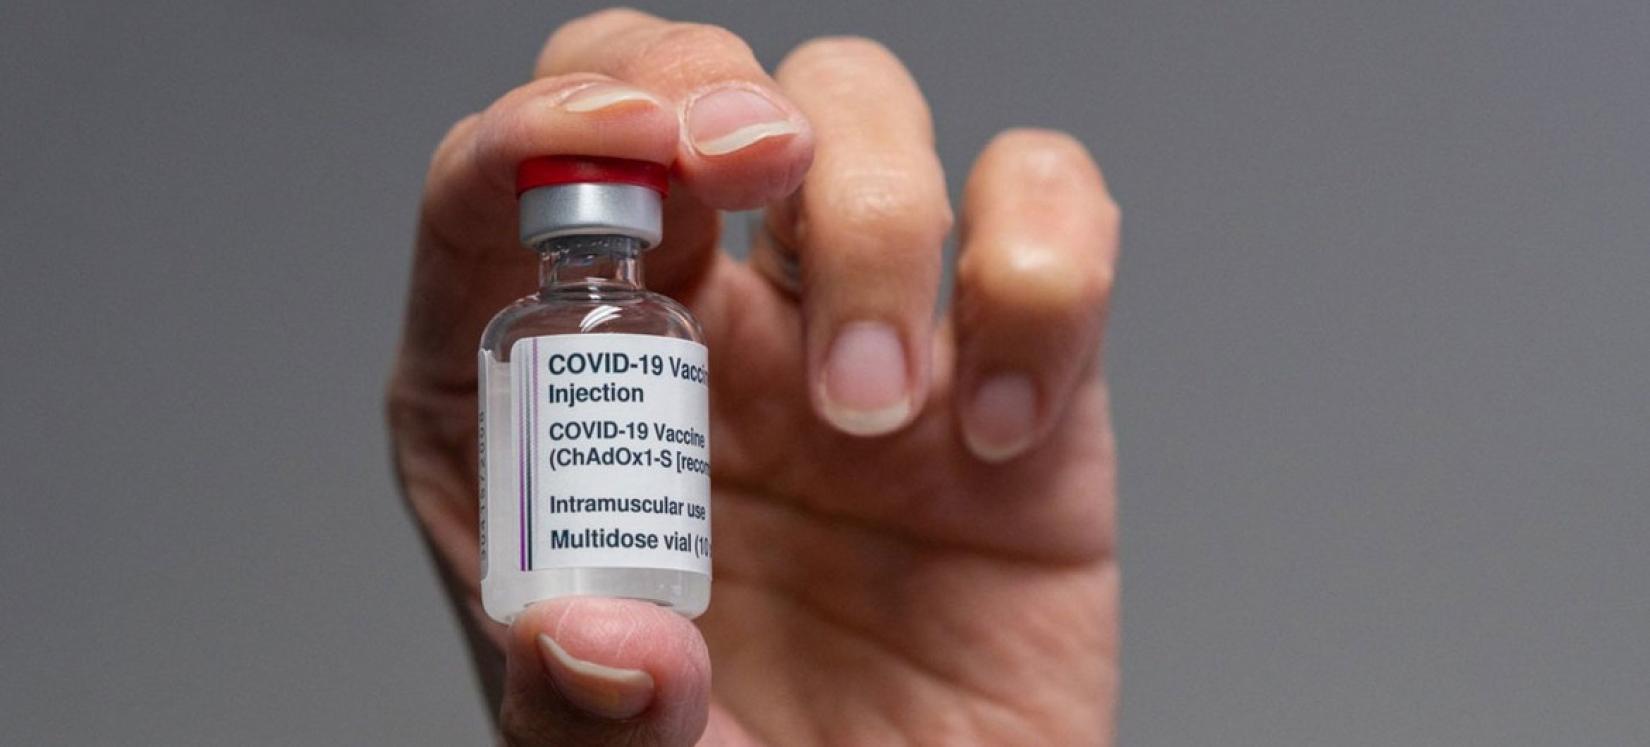 OMS afirma que a vacina AstraZeneca COVID-19 traz mais benefícios que riscos para a saúde.